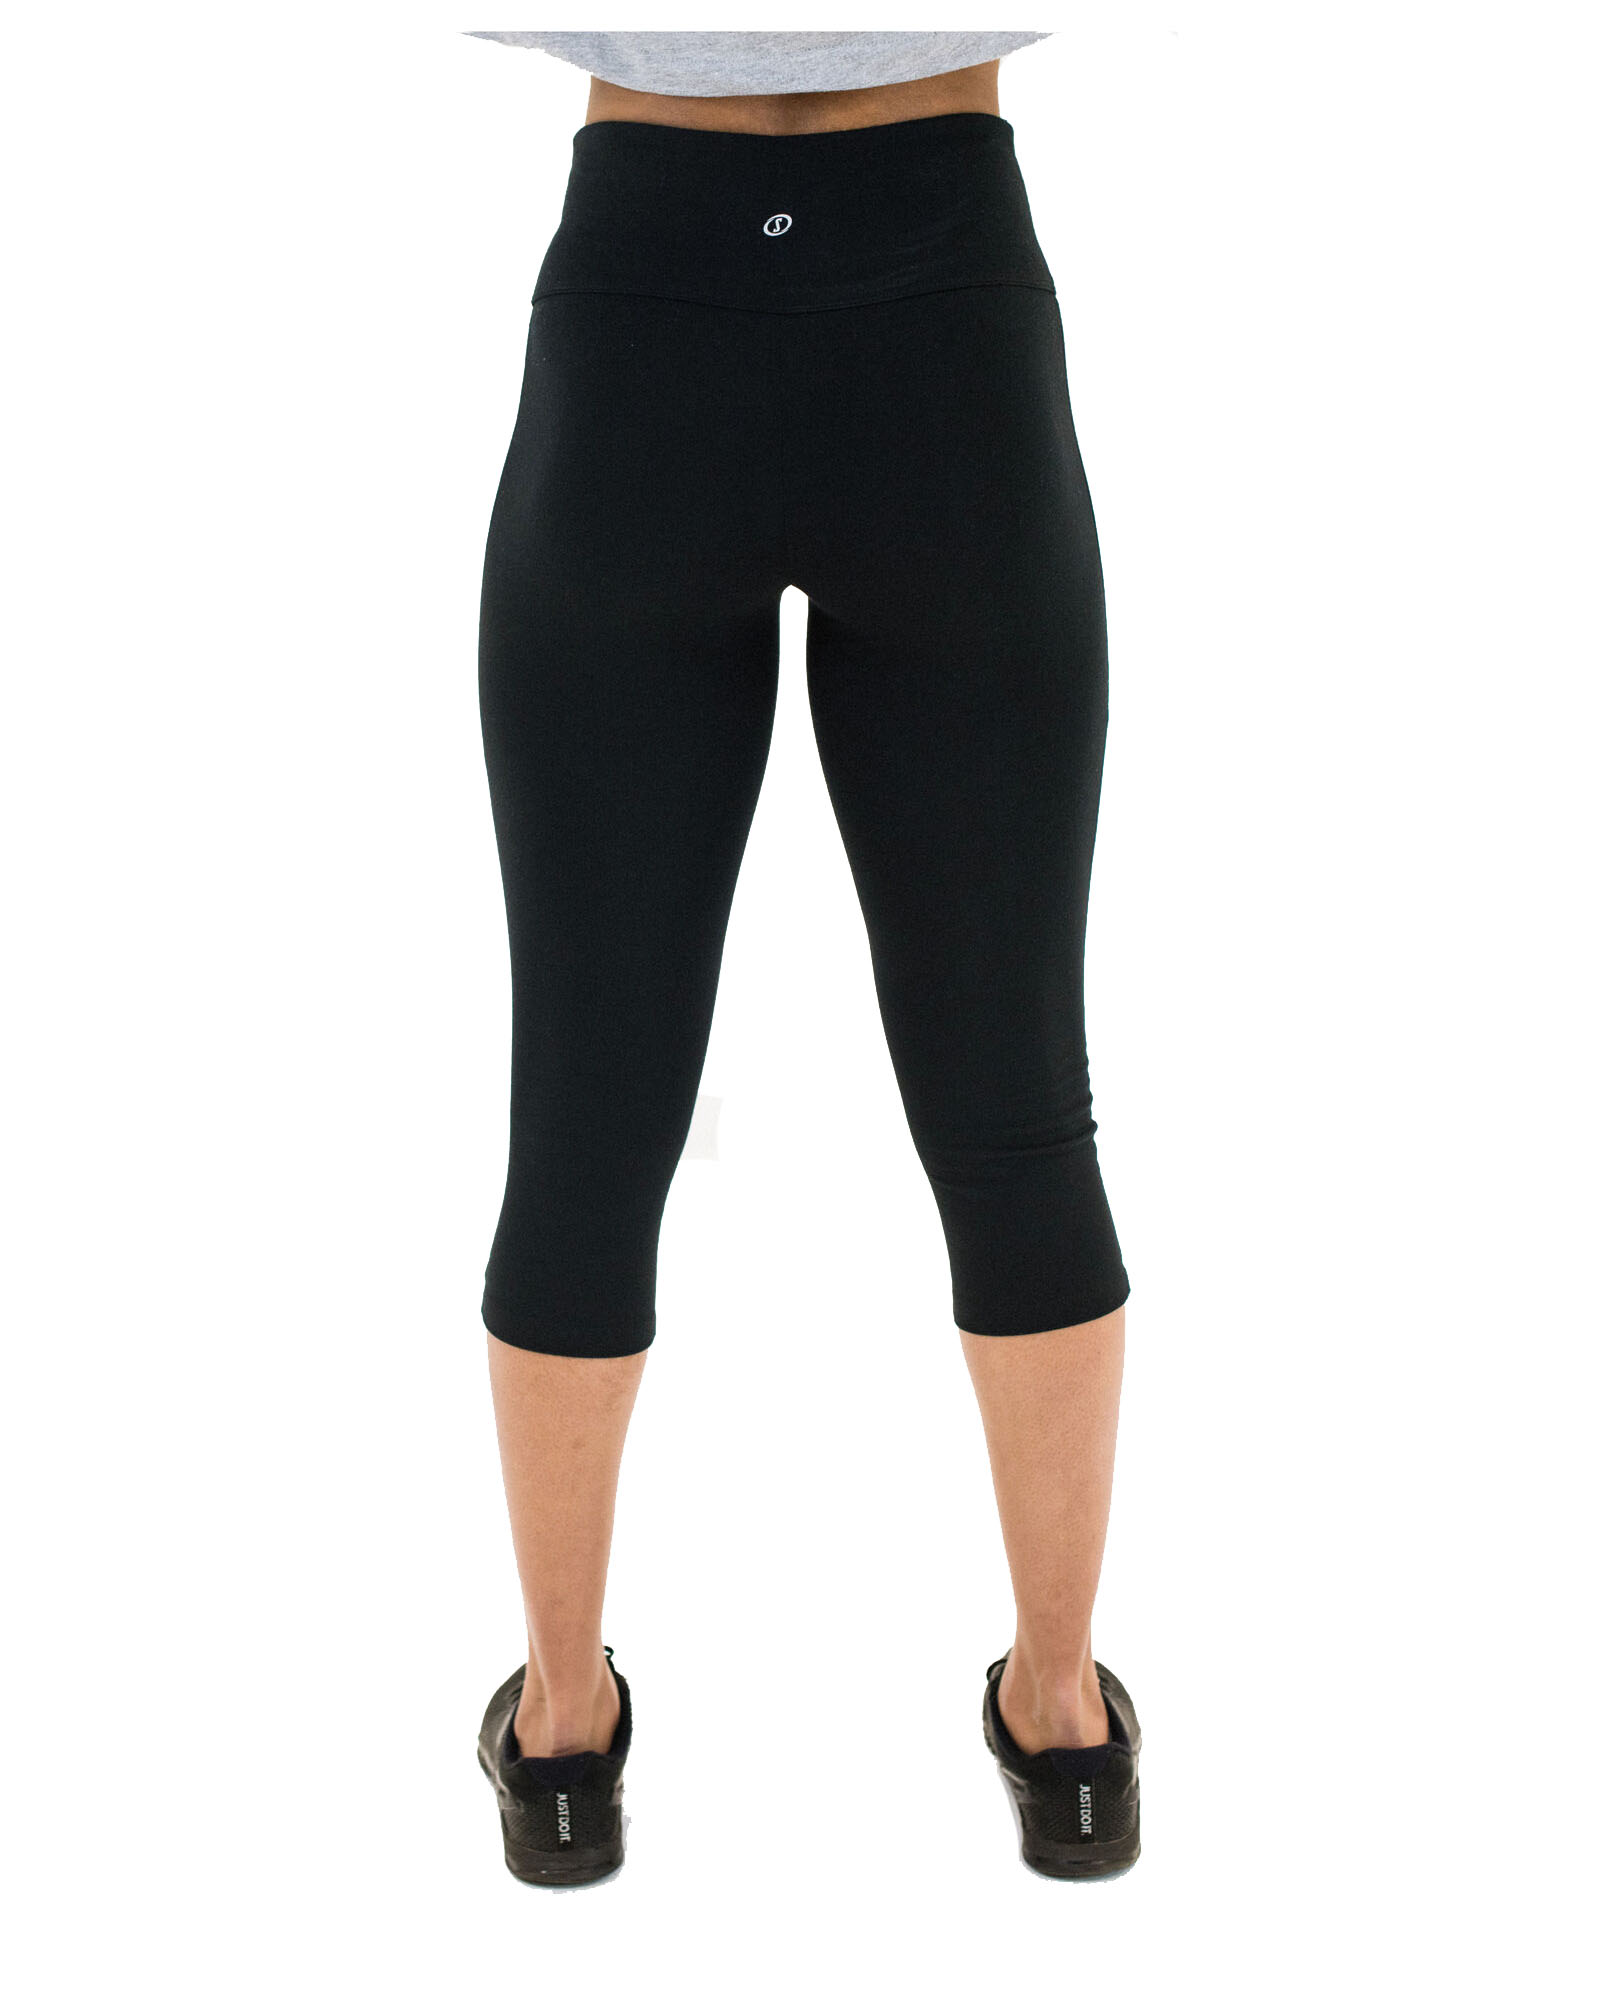 Spalding Women's Essential Capri Legging, Mid-Waist Black, Medium